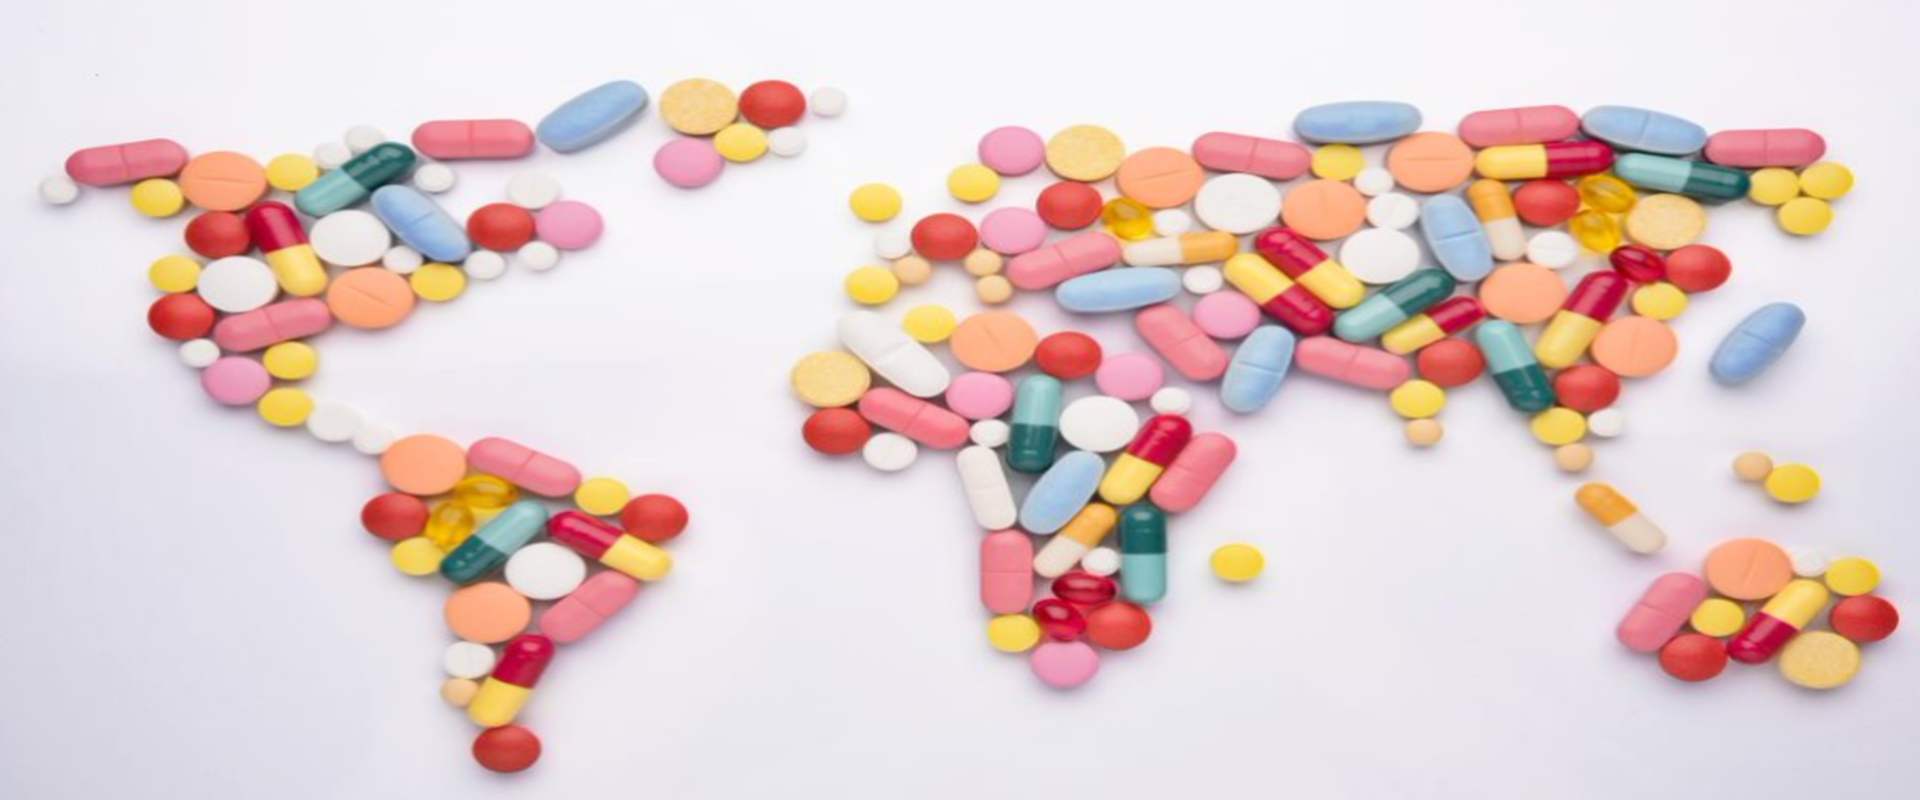 importance of pharmacovigilance